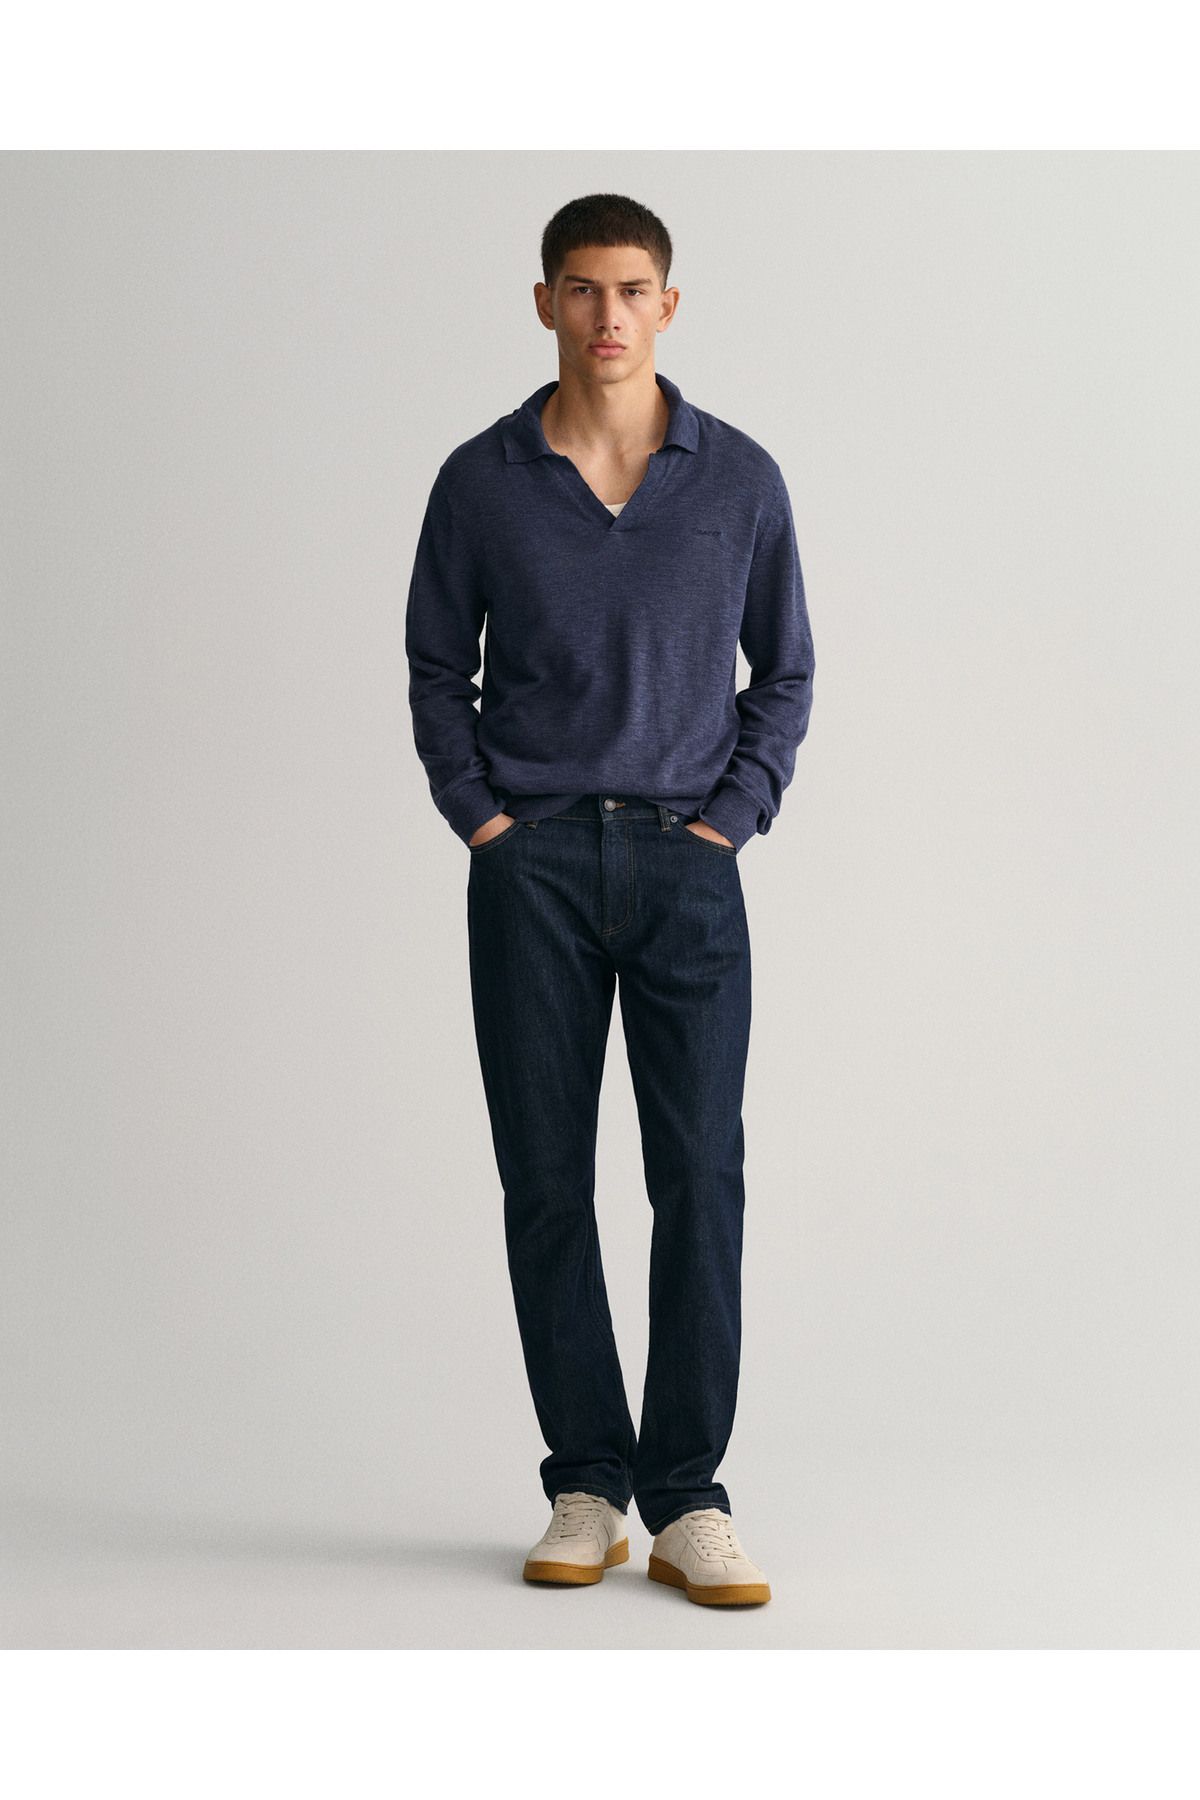 Gant شلوار جین معمولی آبی سرمه ای مردانه